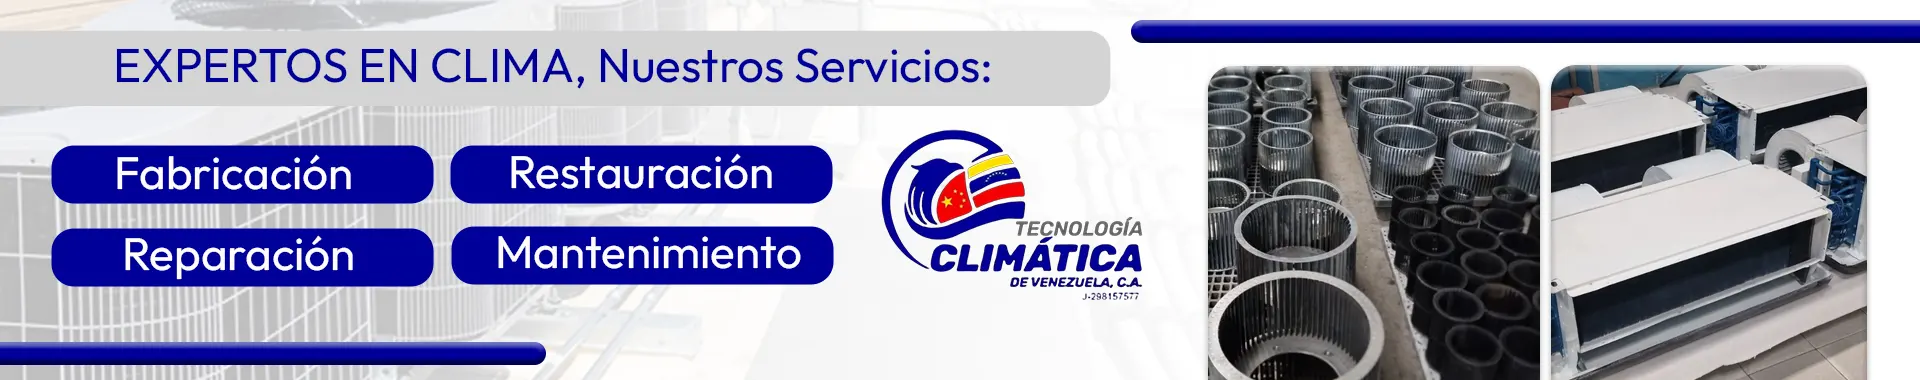 Imagen 2 del perfil de Tecnología Climática de Venezuela